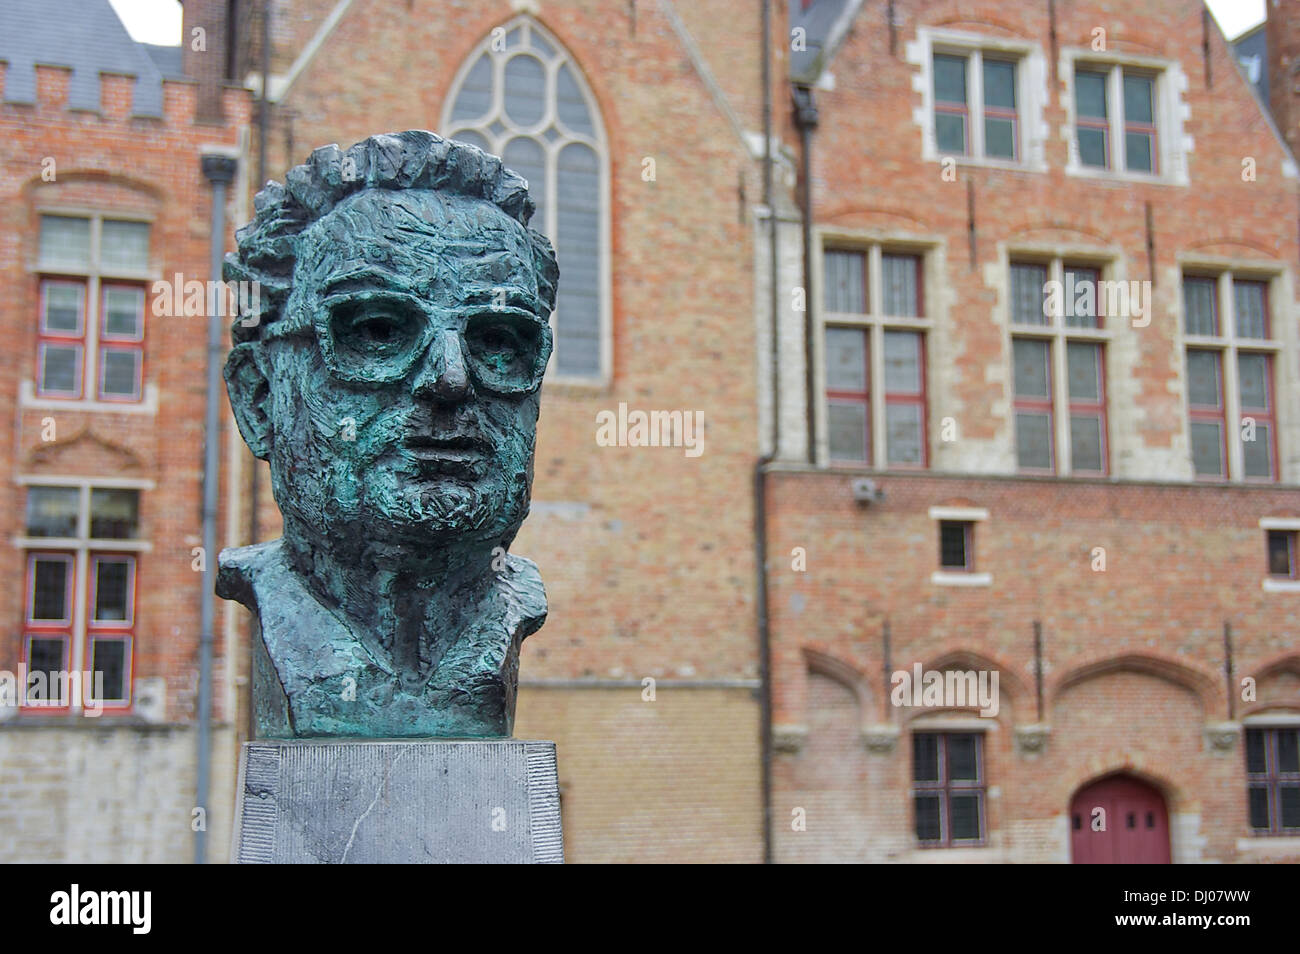 Buste de Frank Van Acker, maire de Bruges de 1976 à 1992. Bruges, Belgique, Europe Banque D'Images